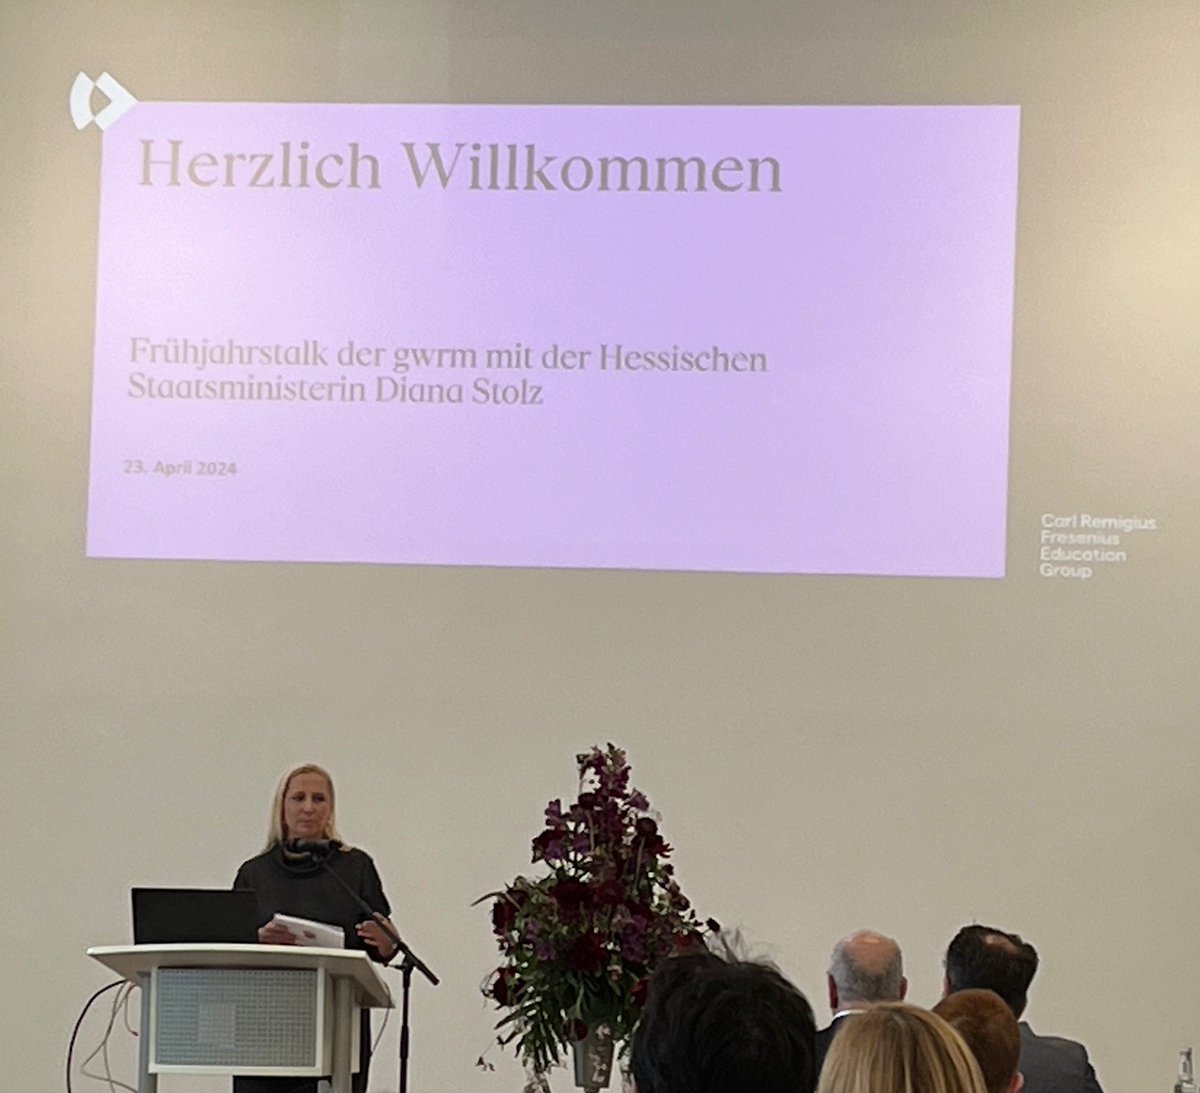 Beim Frühjahrsgespräch der #gwrm gestern Abend bei der @HS_Fresenius in Wiesbaden gab es spannende Impulse & anregende Diskussionen über aktuelle Herausforderungen und Perspektiven im Gesundheitswesen in Hessen mit der Hessischen Gesundheitsministerin Diana Stolz @FamilienHessen.